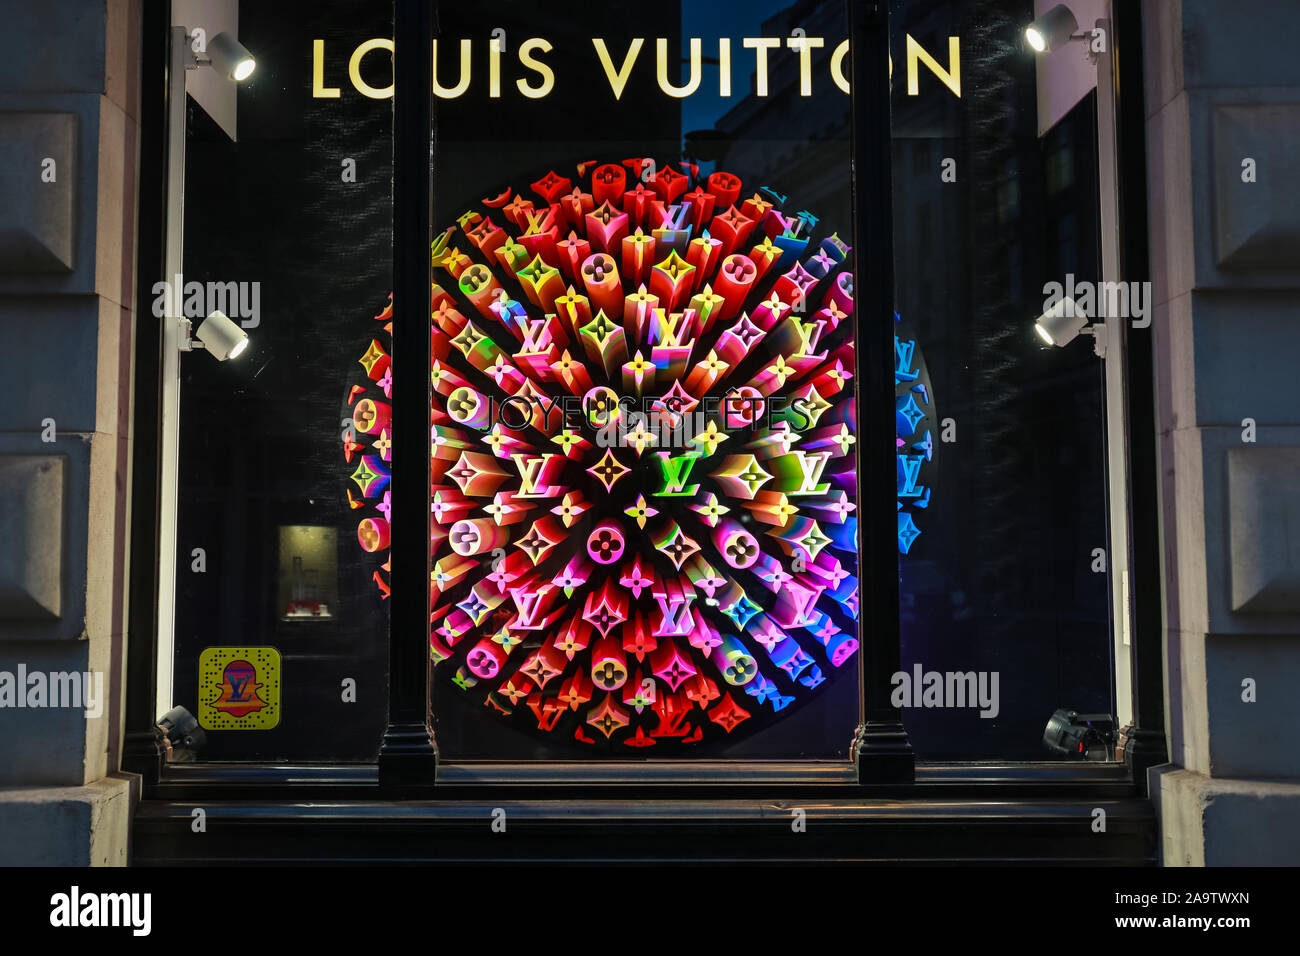 London, UK 16 Nov 2019. LV Louis Vuitton sign logo. LV is a famous